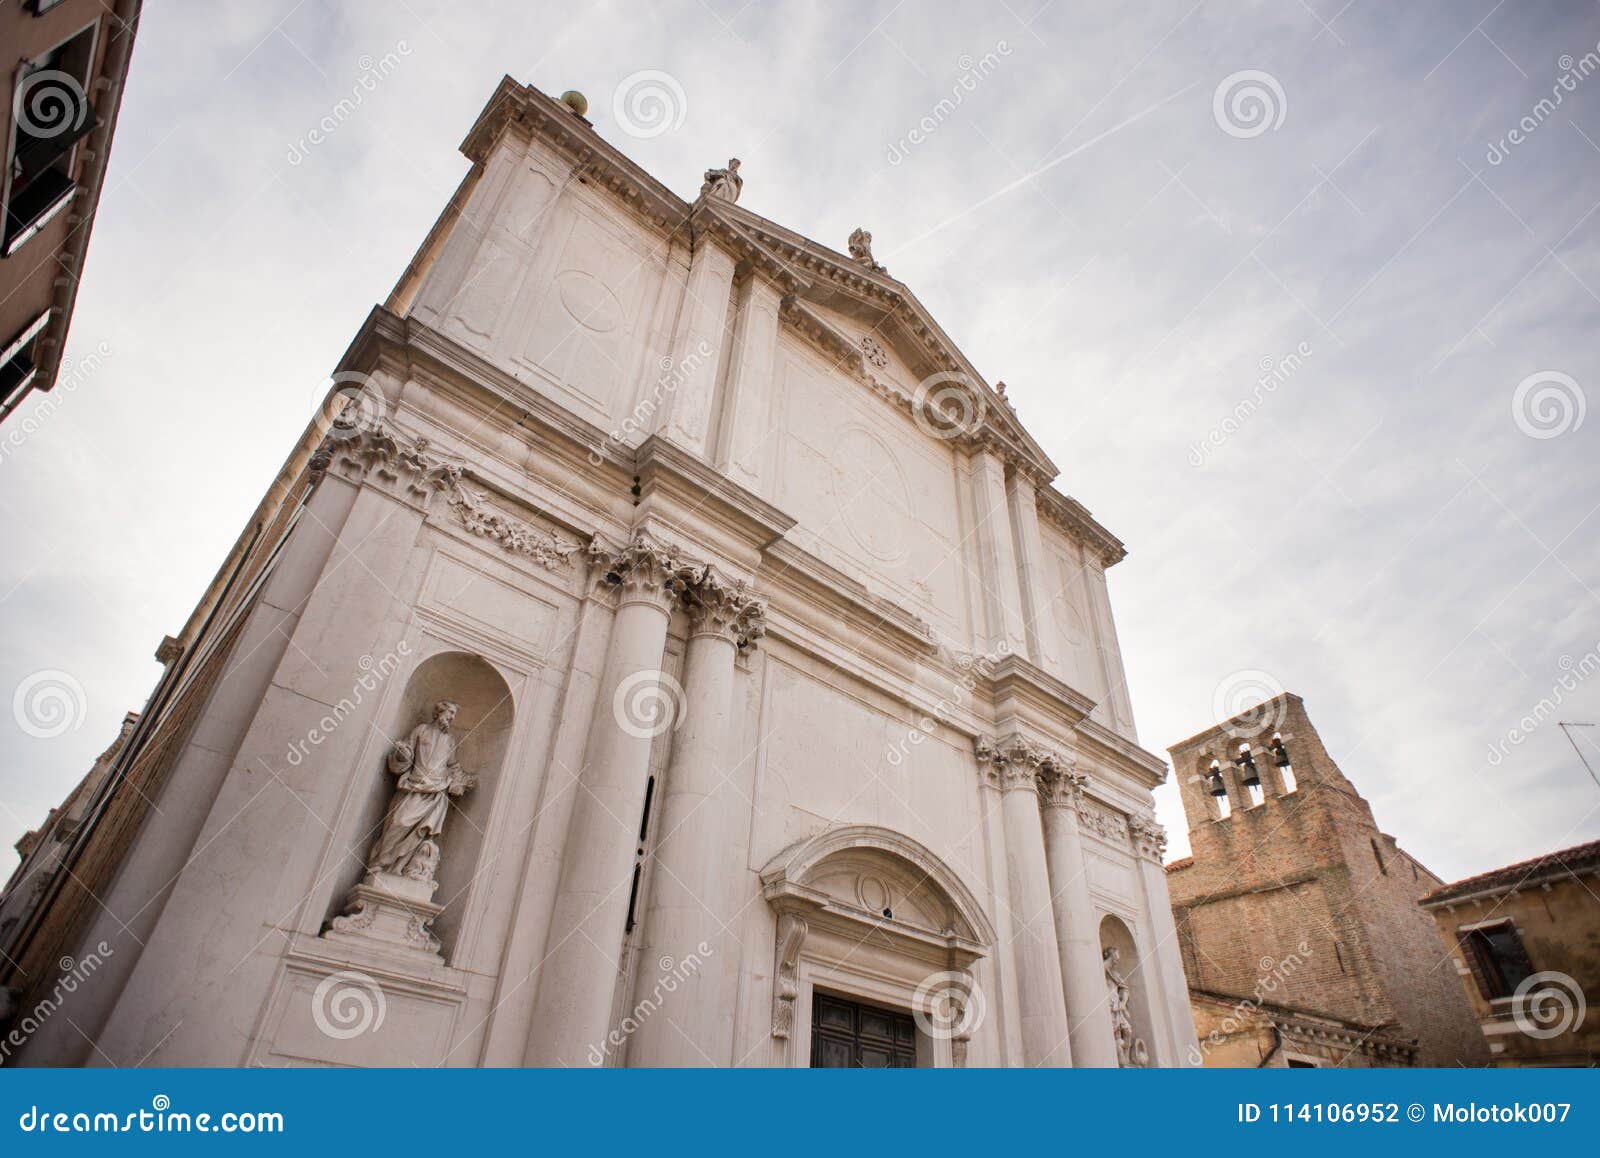 facade of the church of san toma in venice. italy.